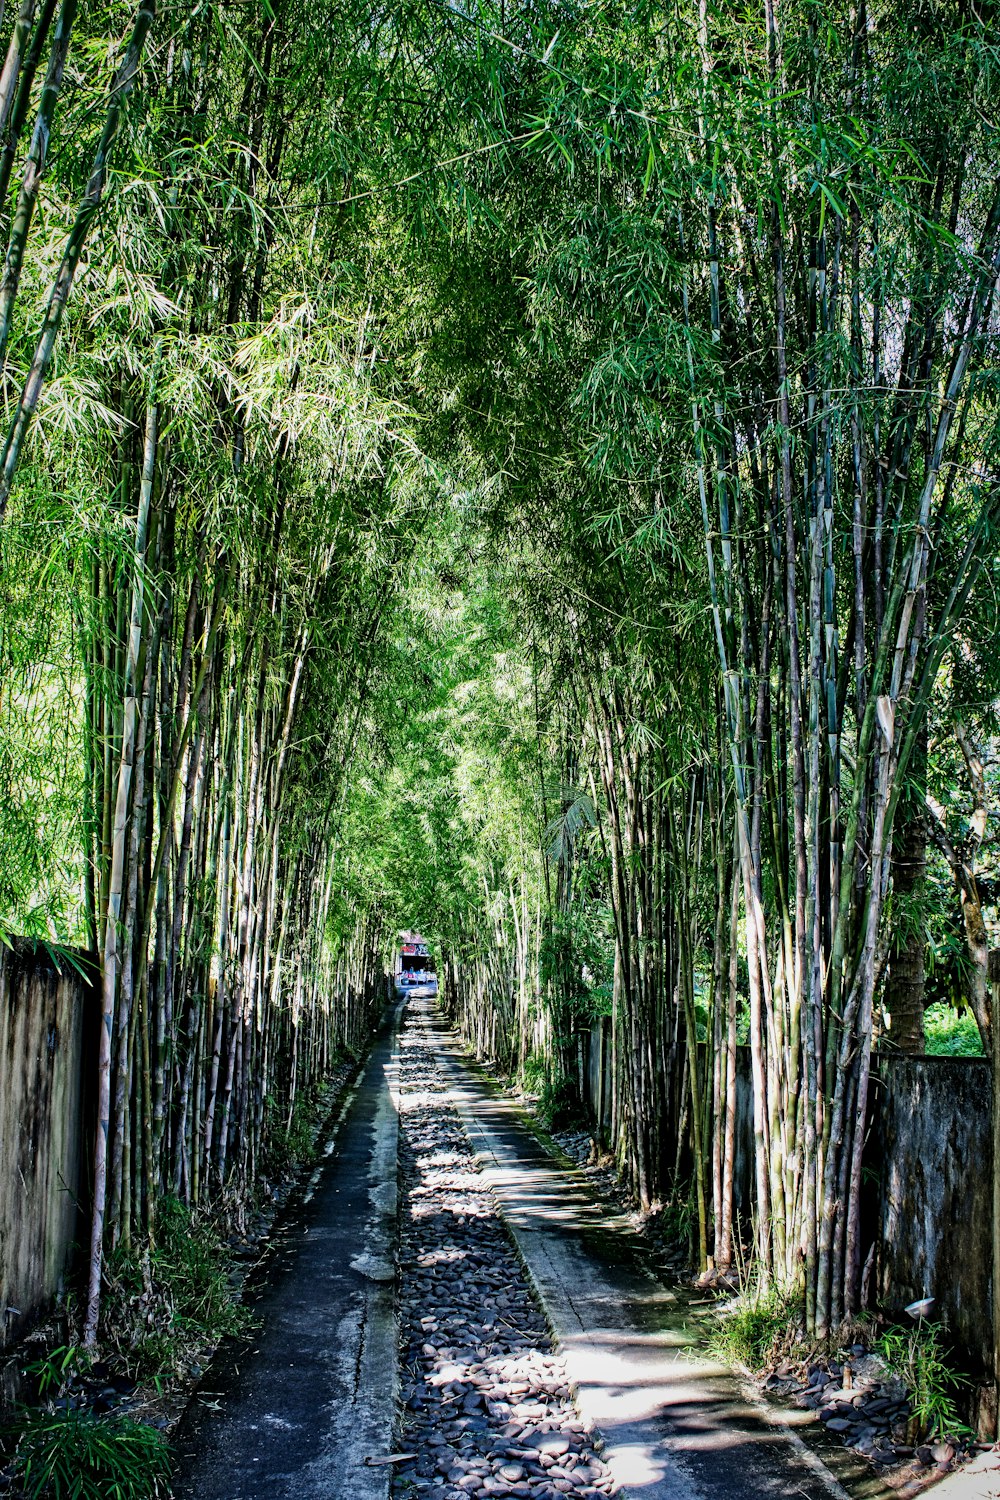 personne marchant sur un pont en bois entre des arbres verts pendant la journée